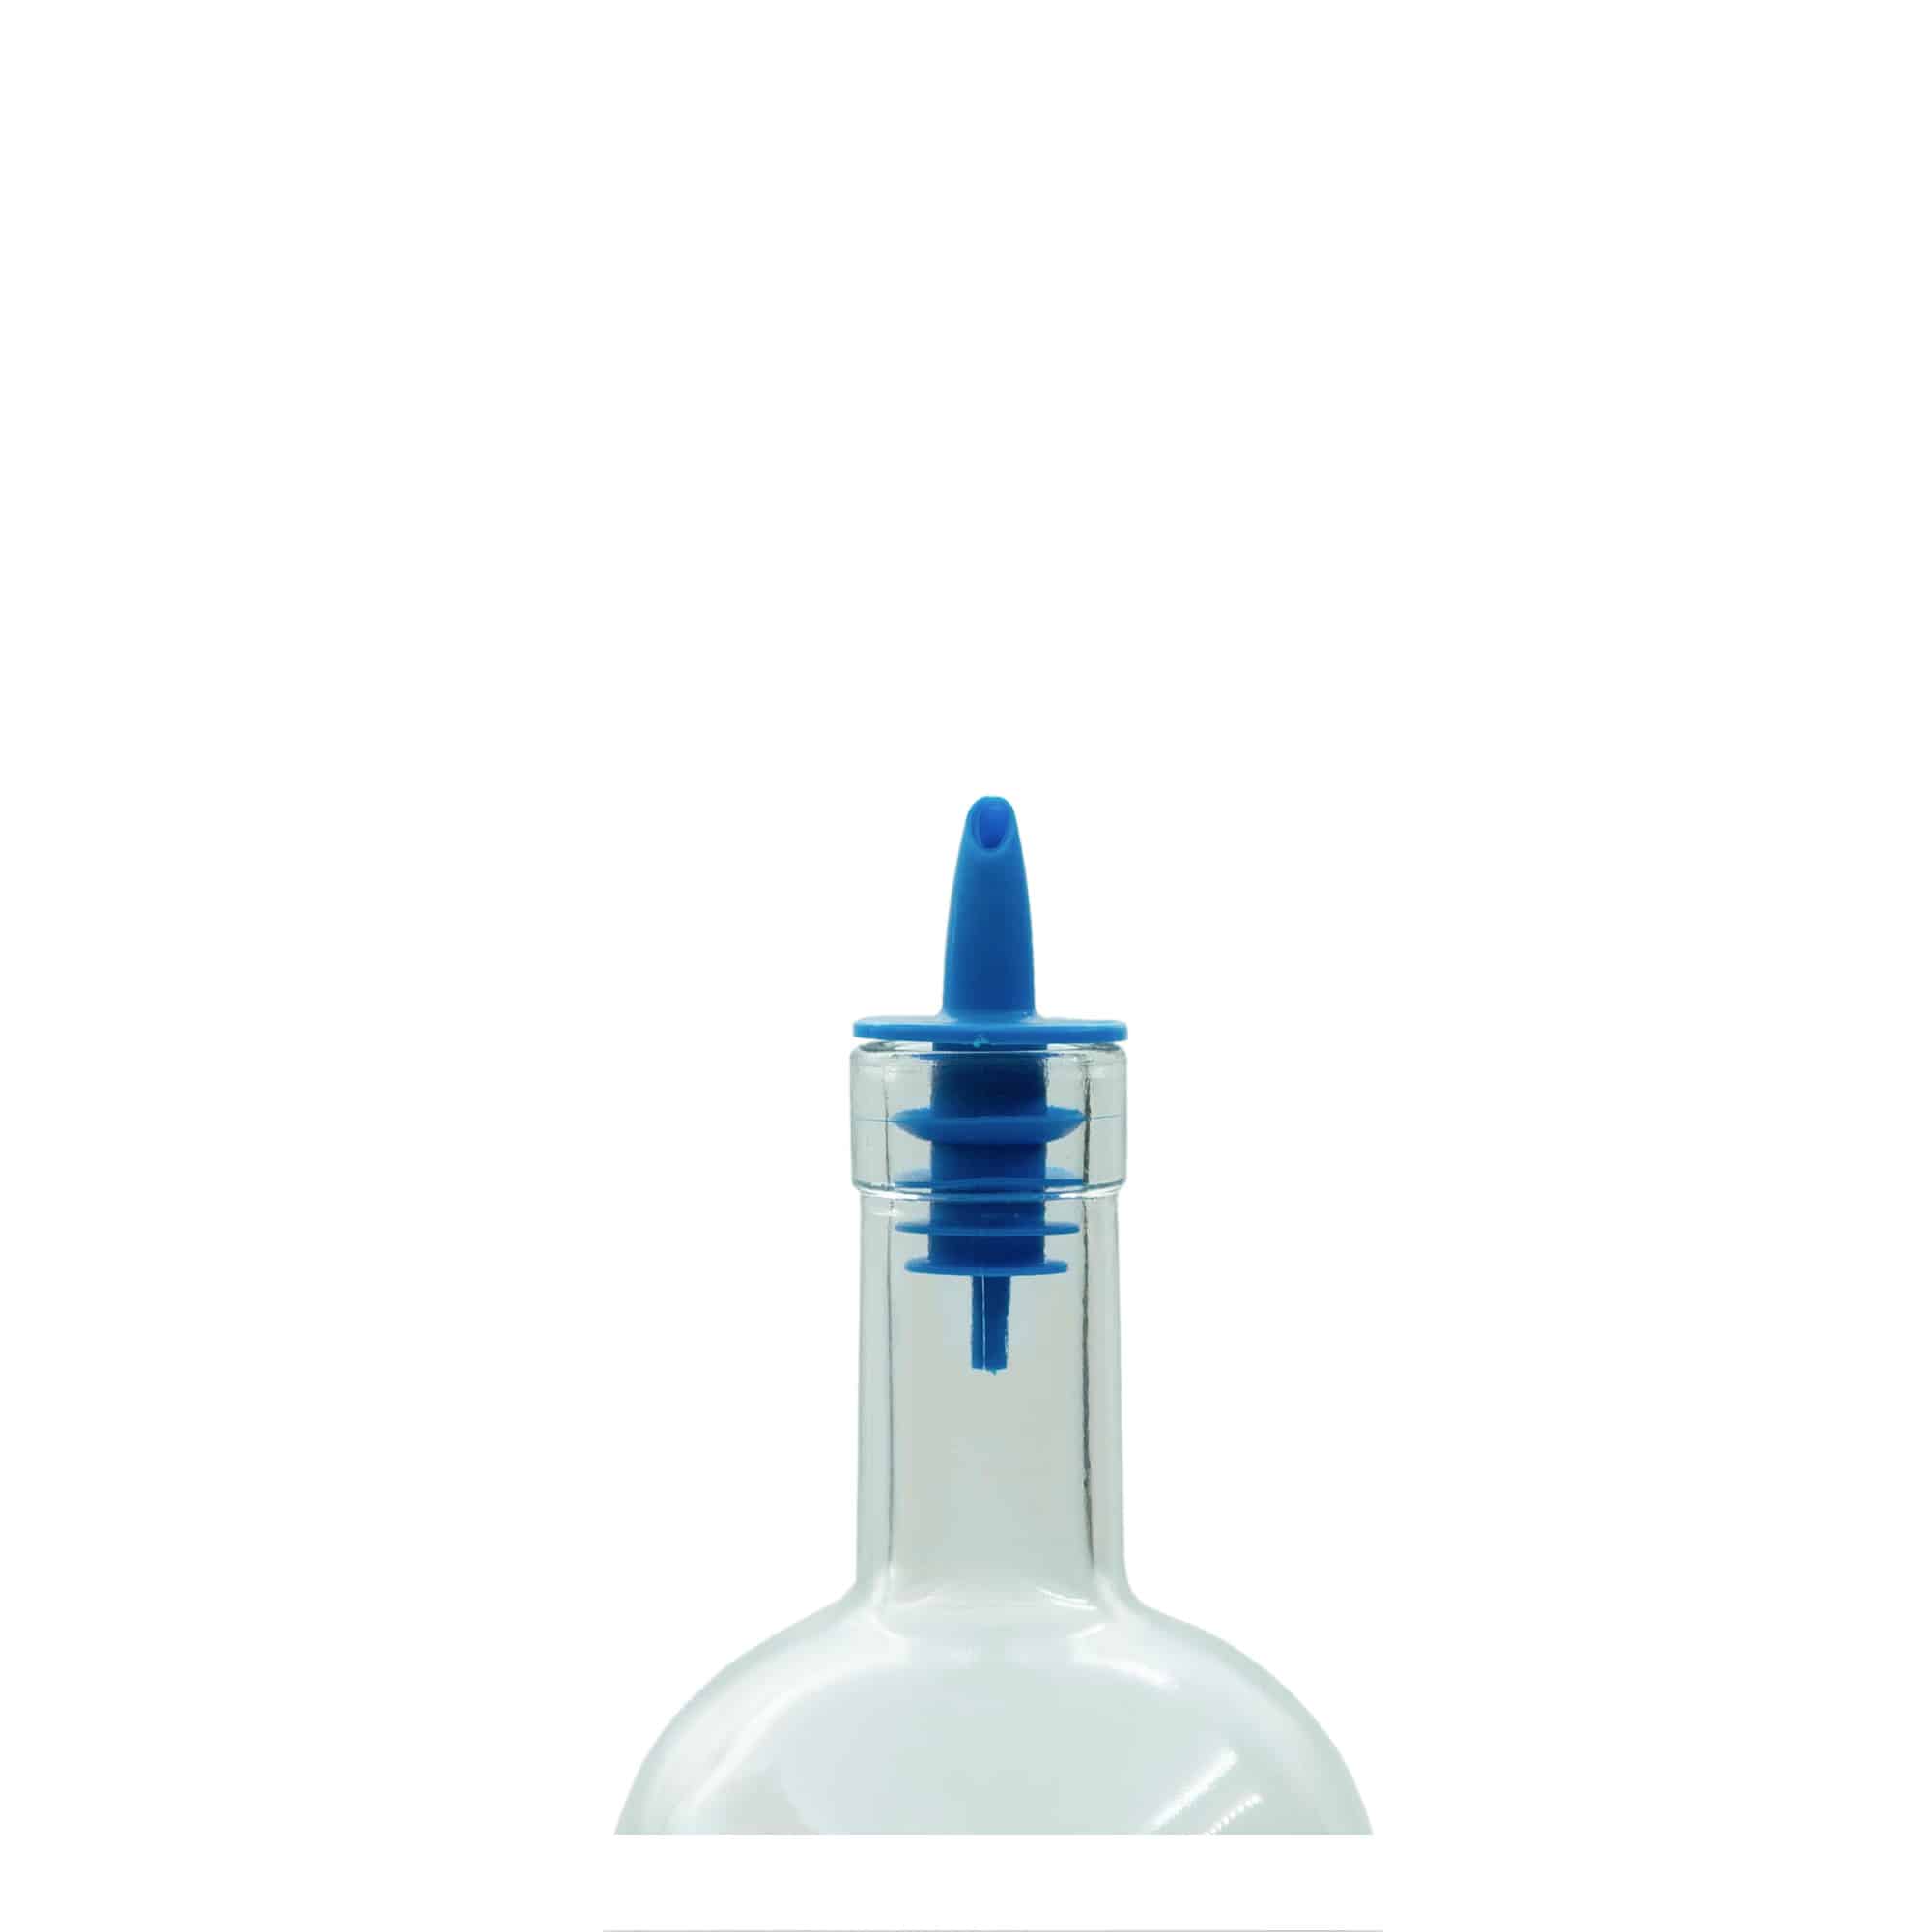 Wylewka do butelek Jet Pour, tworzywo sztuczne PE, kolor niebieski